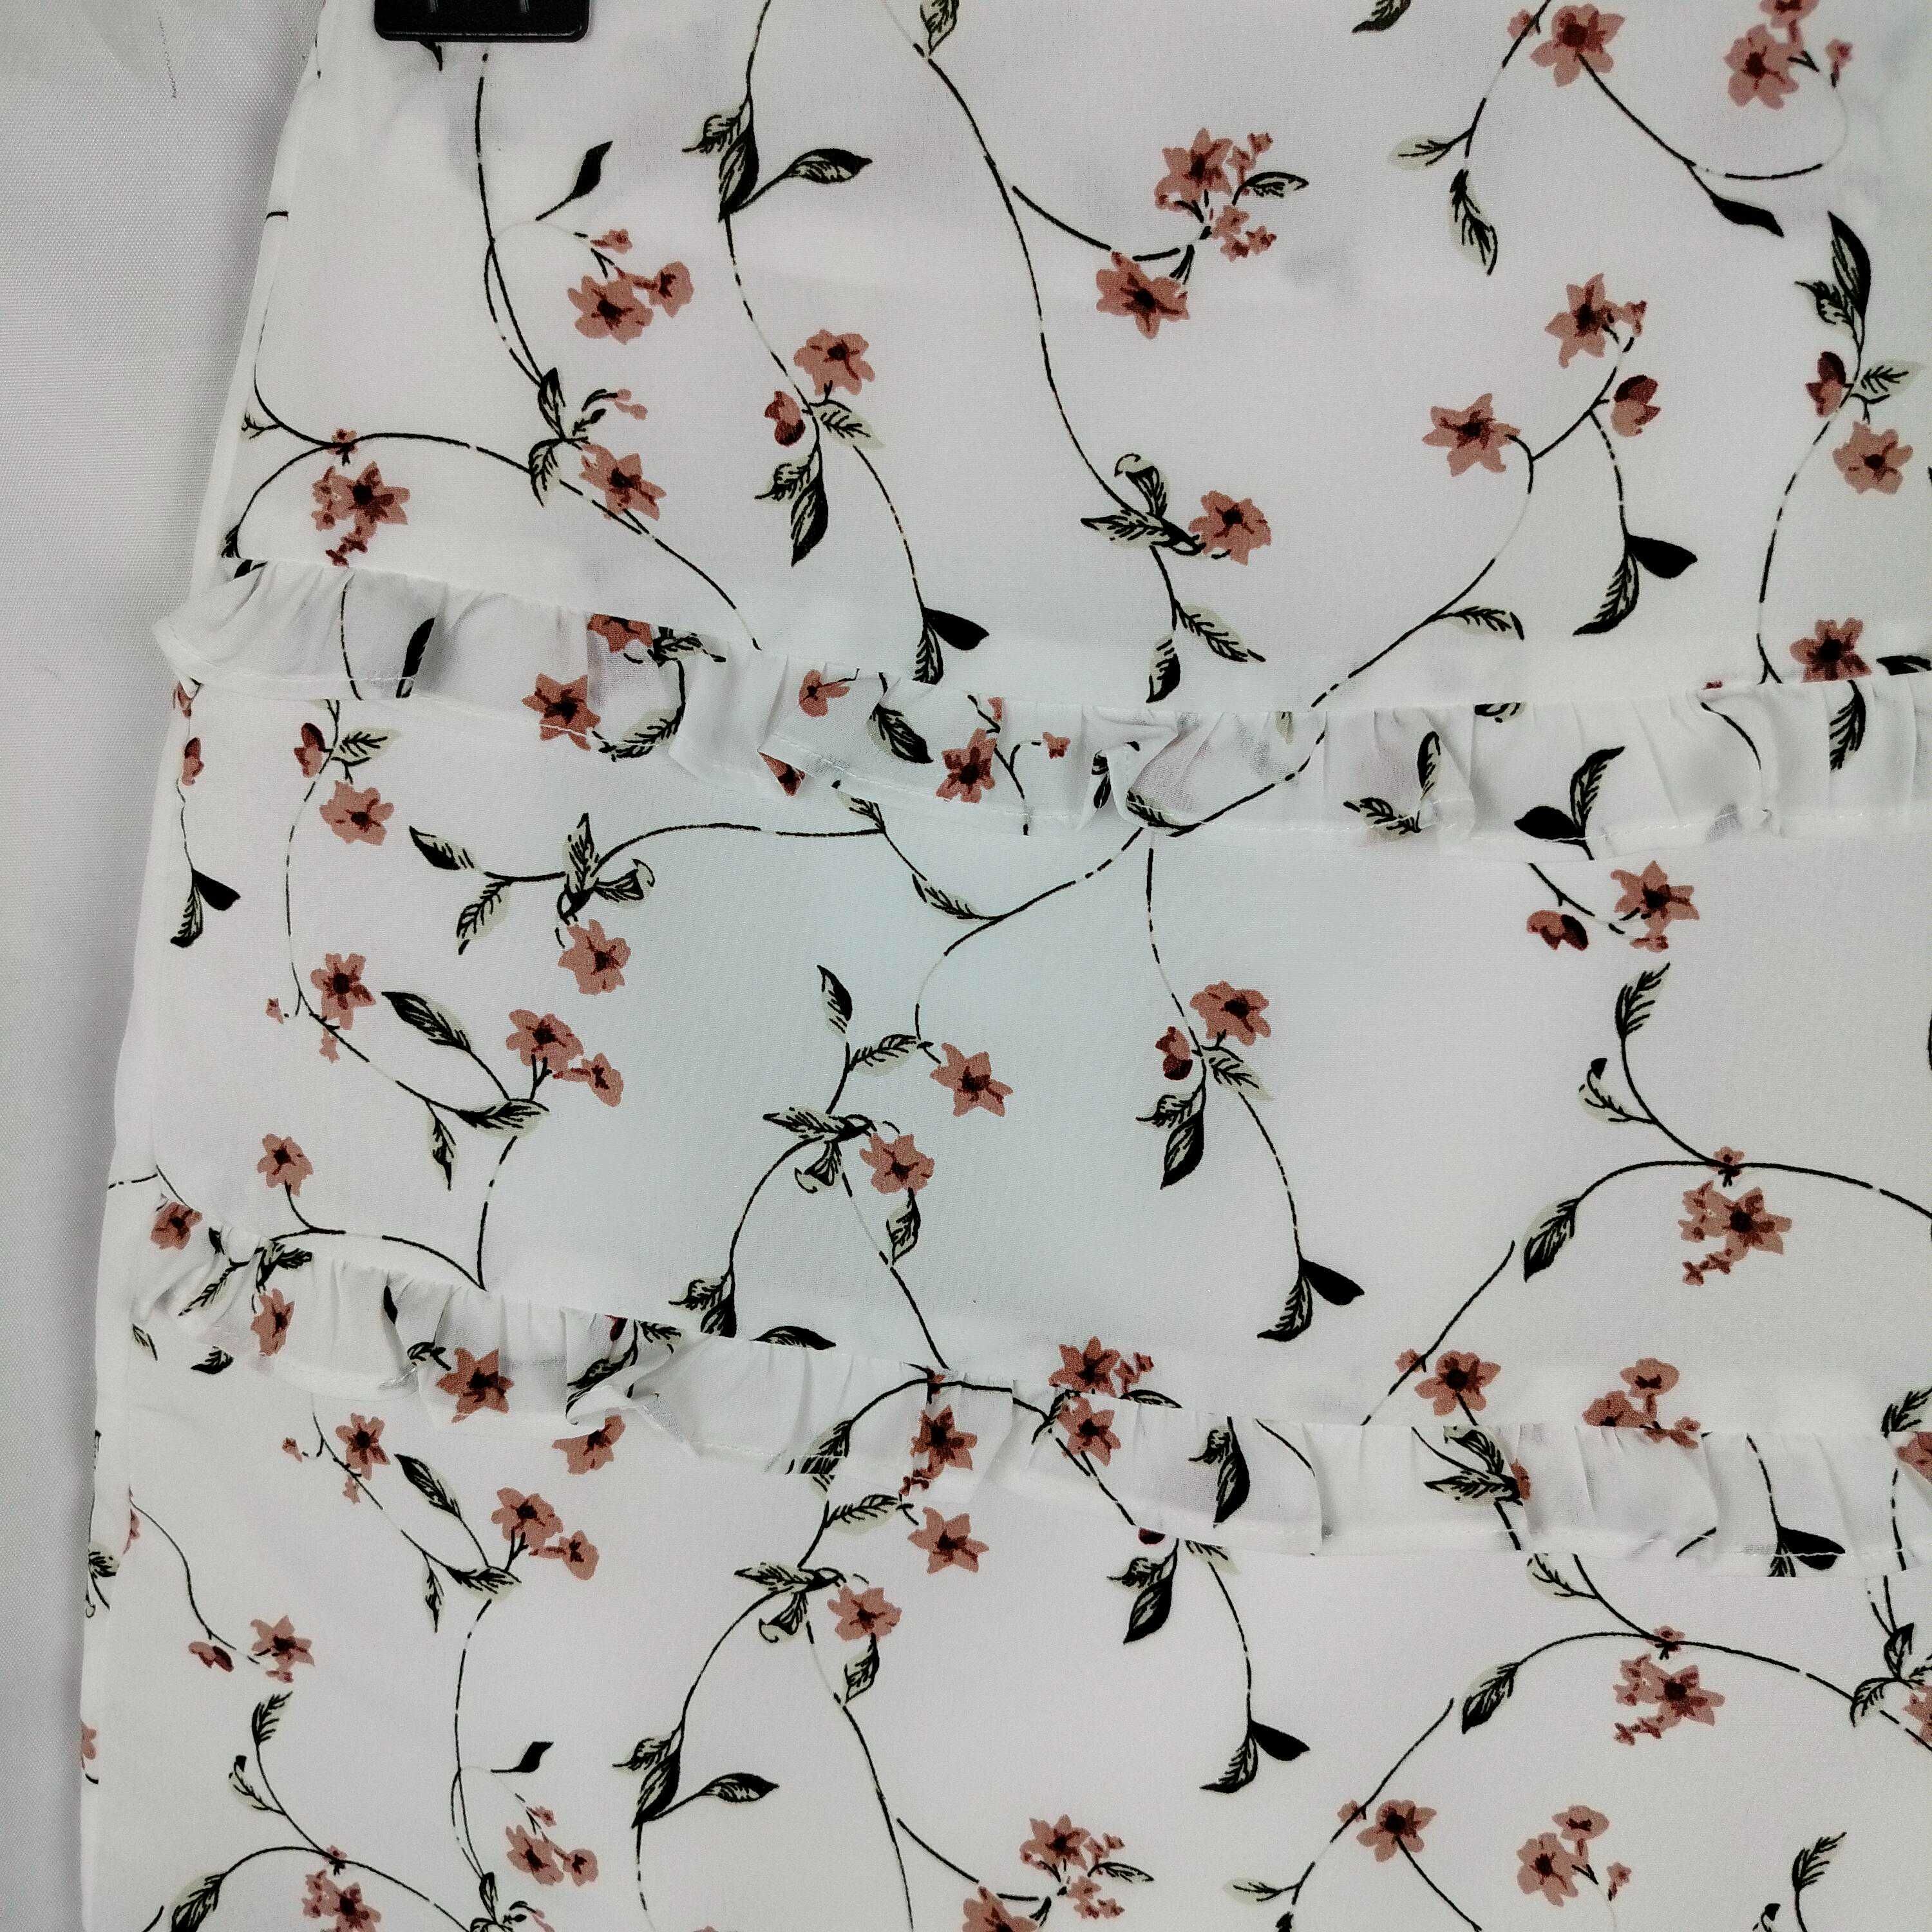 Damska krótka spódnica w rozmiarze xs 34 biała w kwiaty